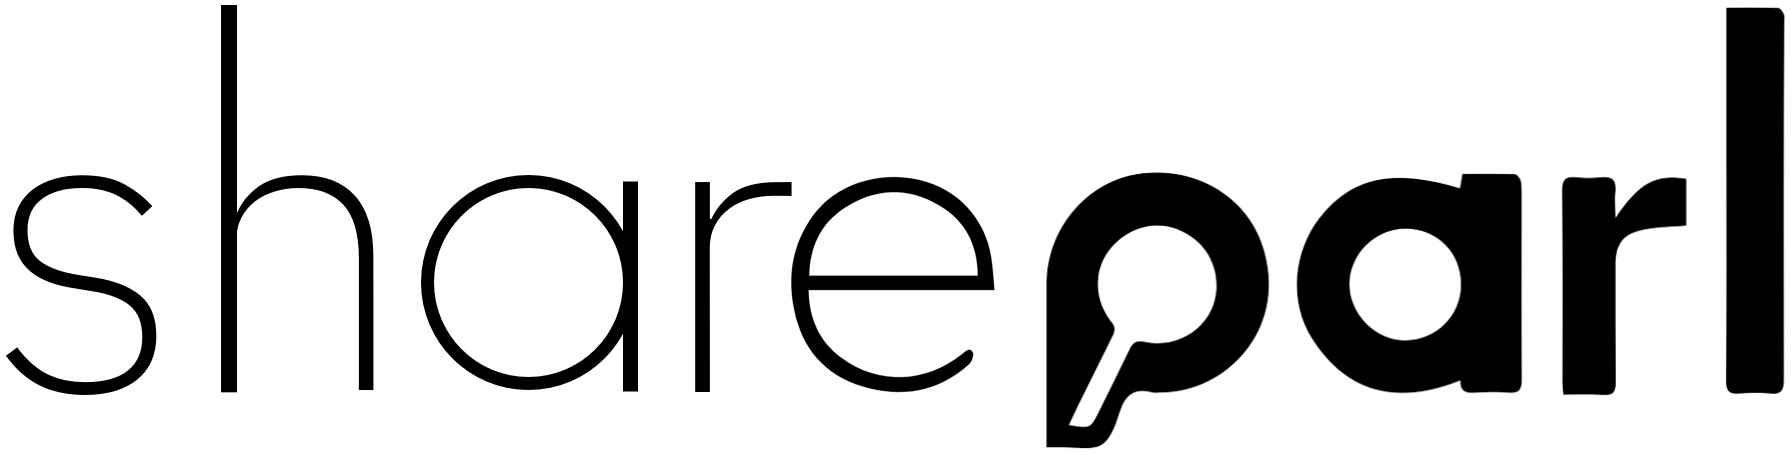 shareparl logo suchbar protokollieren